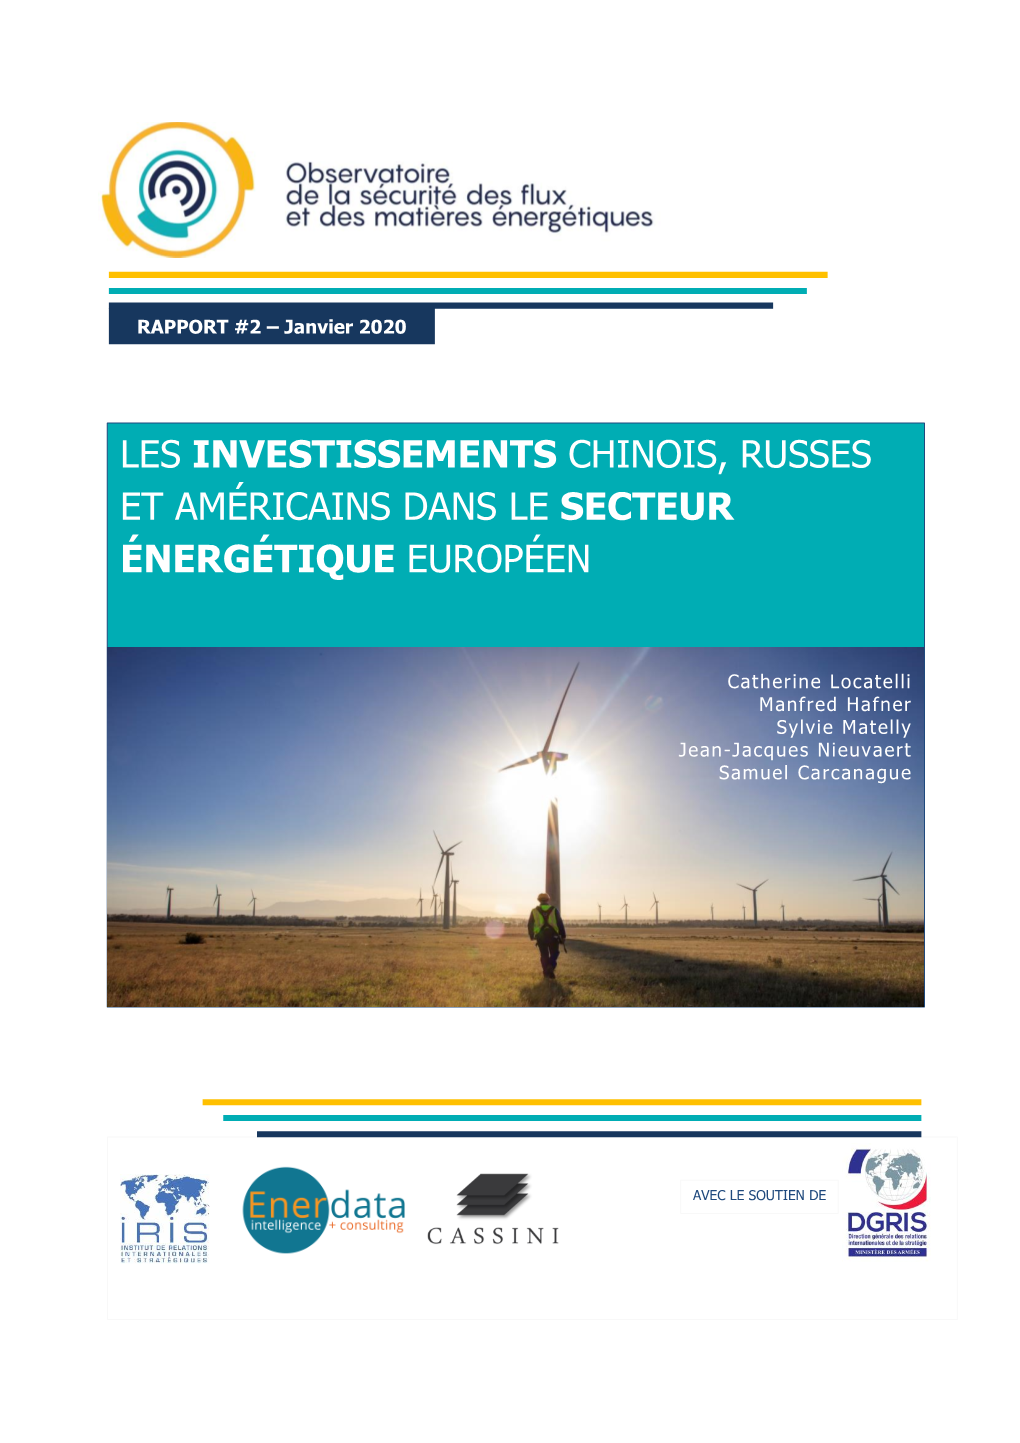 Les Investissements Chinois, Russes Et Américains Dans Le Secteur Énergétique Européen